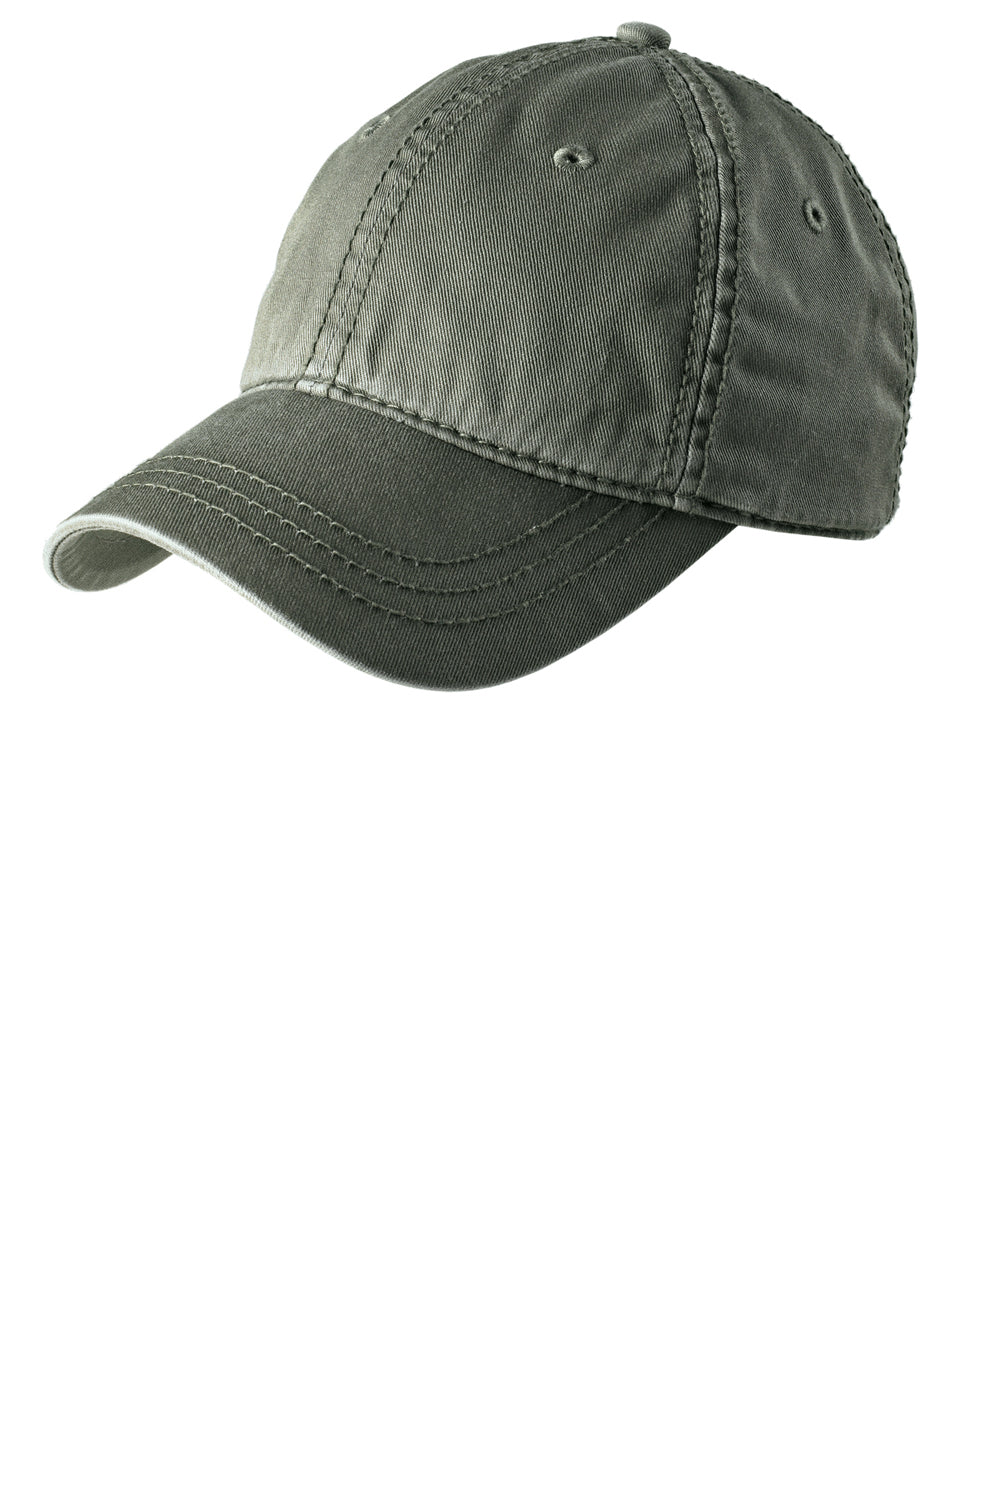 District DT610 Mens Adjustable Hat Olive Green Front